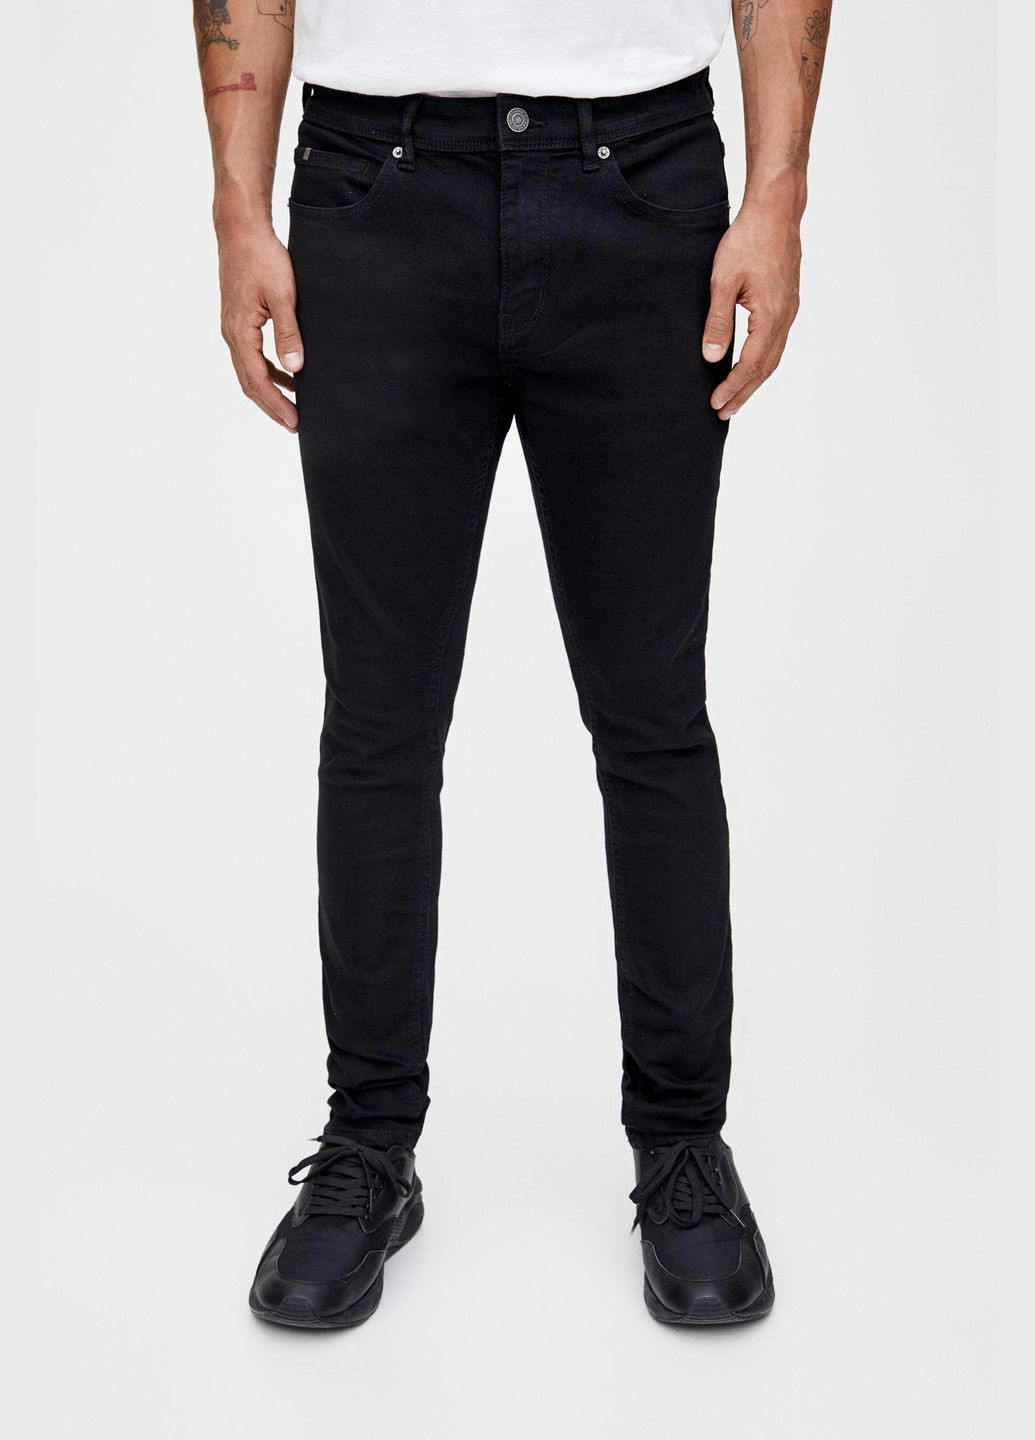 Черные джинсы демисезон,черный, Pull & Bear